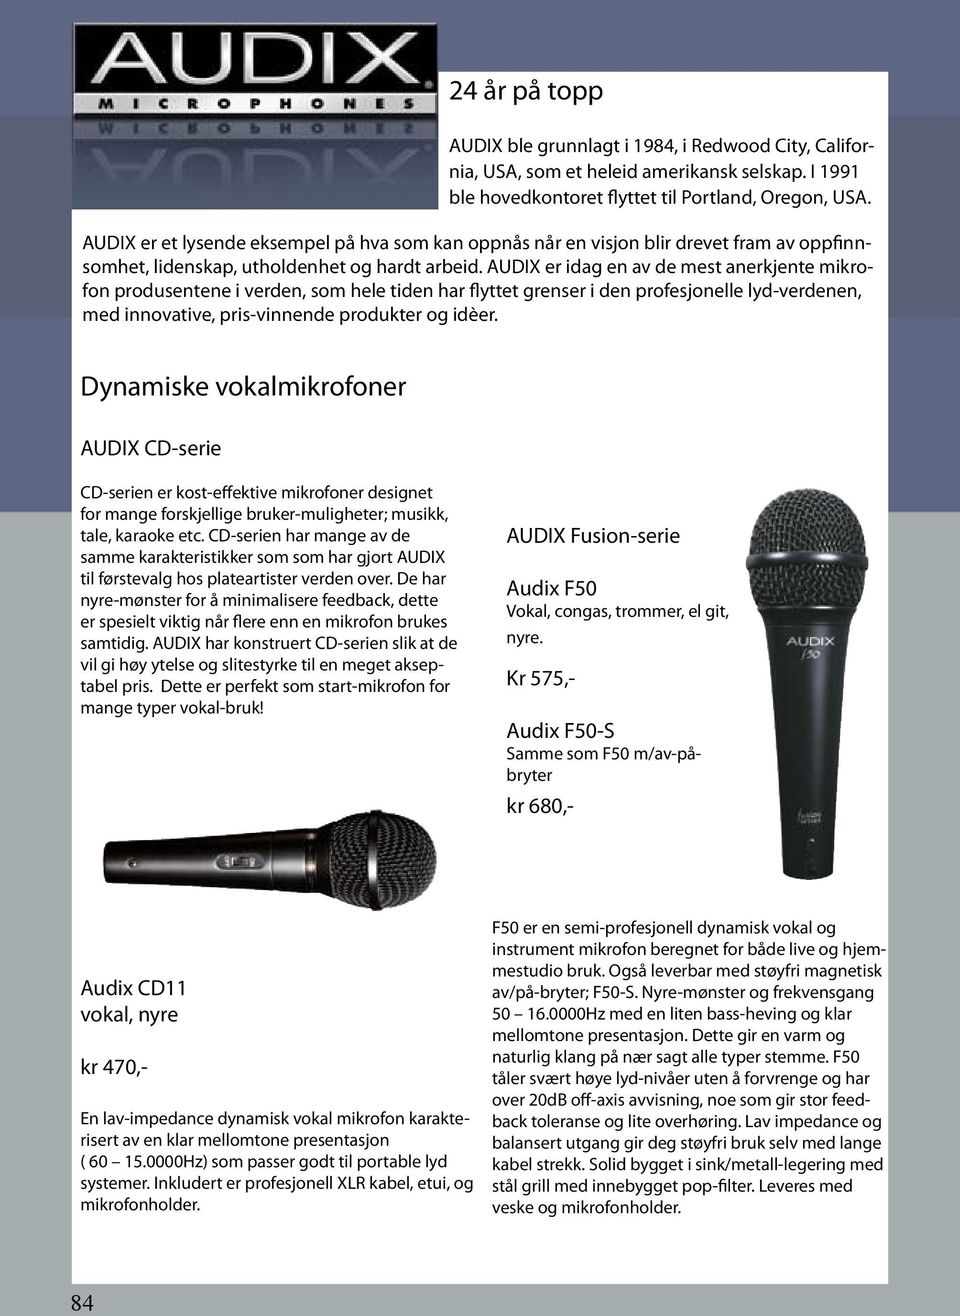 AUDIX er idag en av de mest anerkjente mikrofon produsentene i verden, som hele tiden har flyttet grenser i den profesjonelle lyd-verdenen, med innovative, pris-vinnende produkter og idèer.